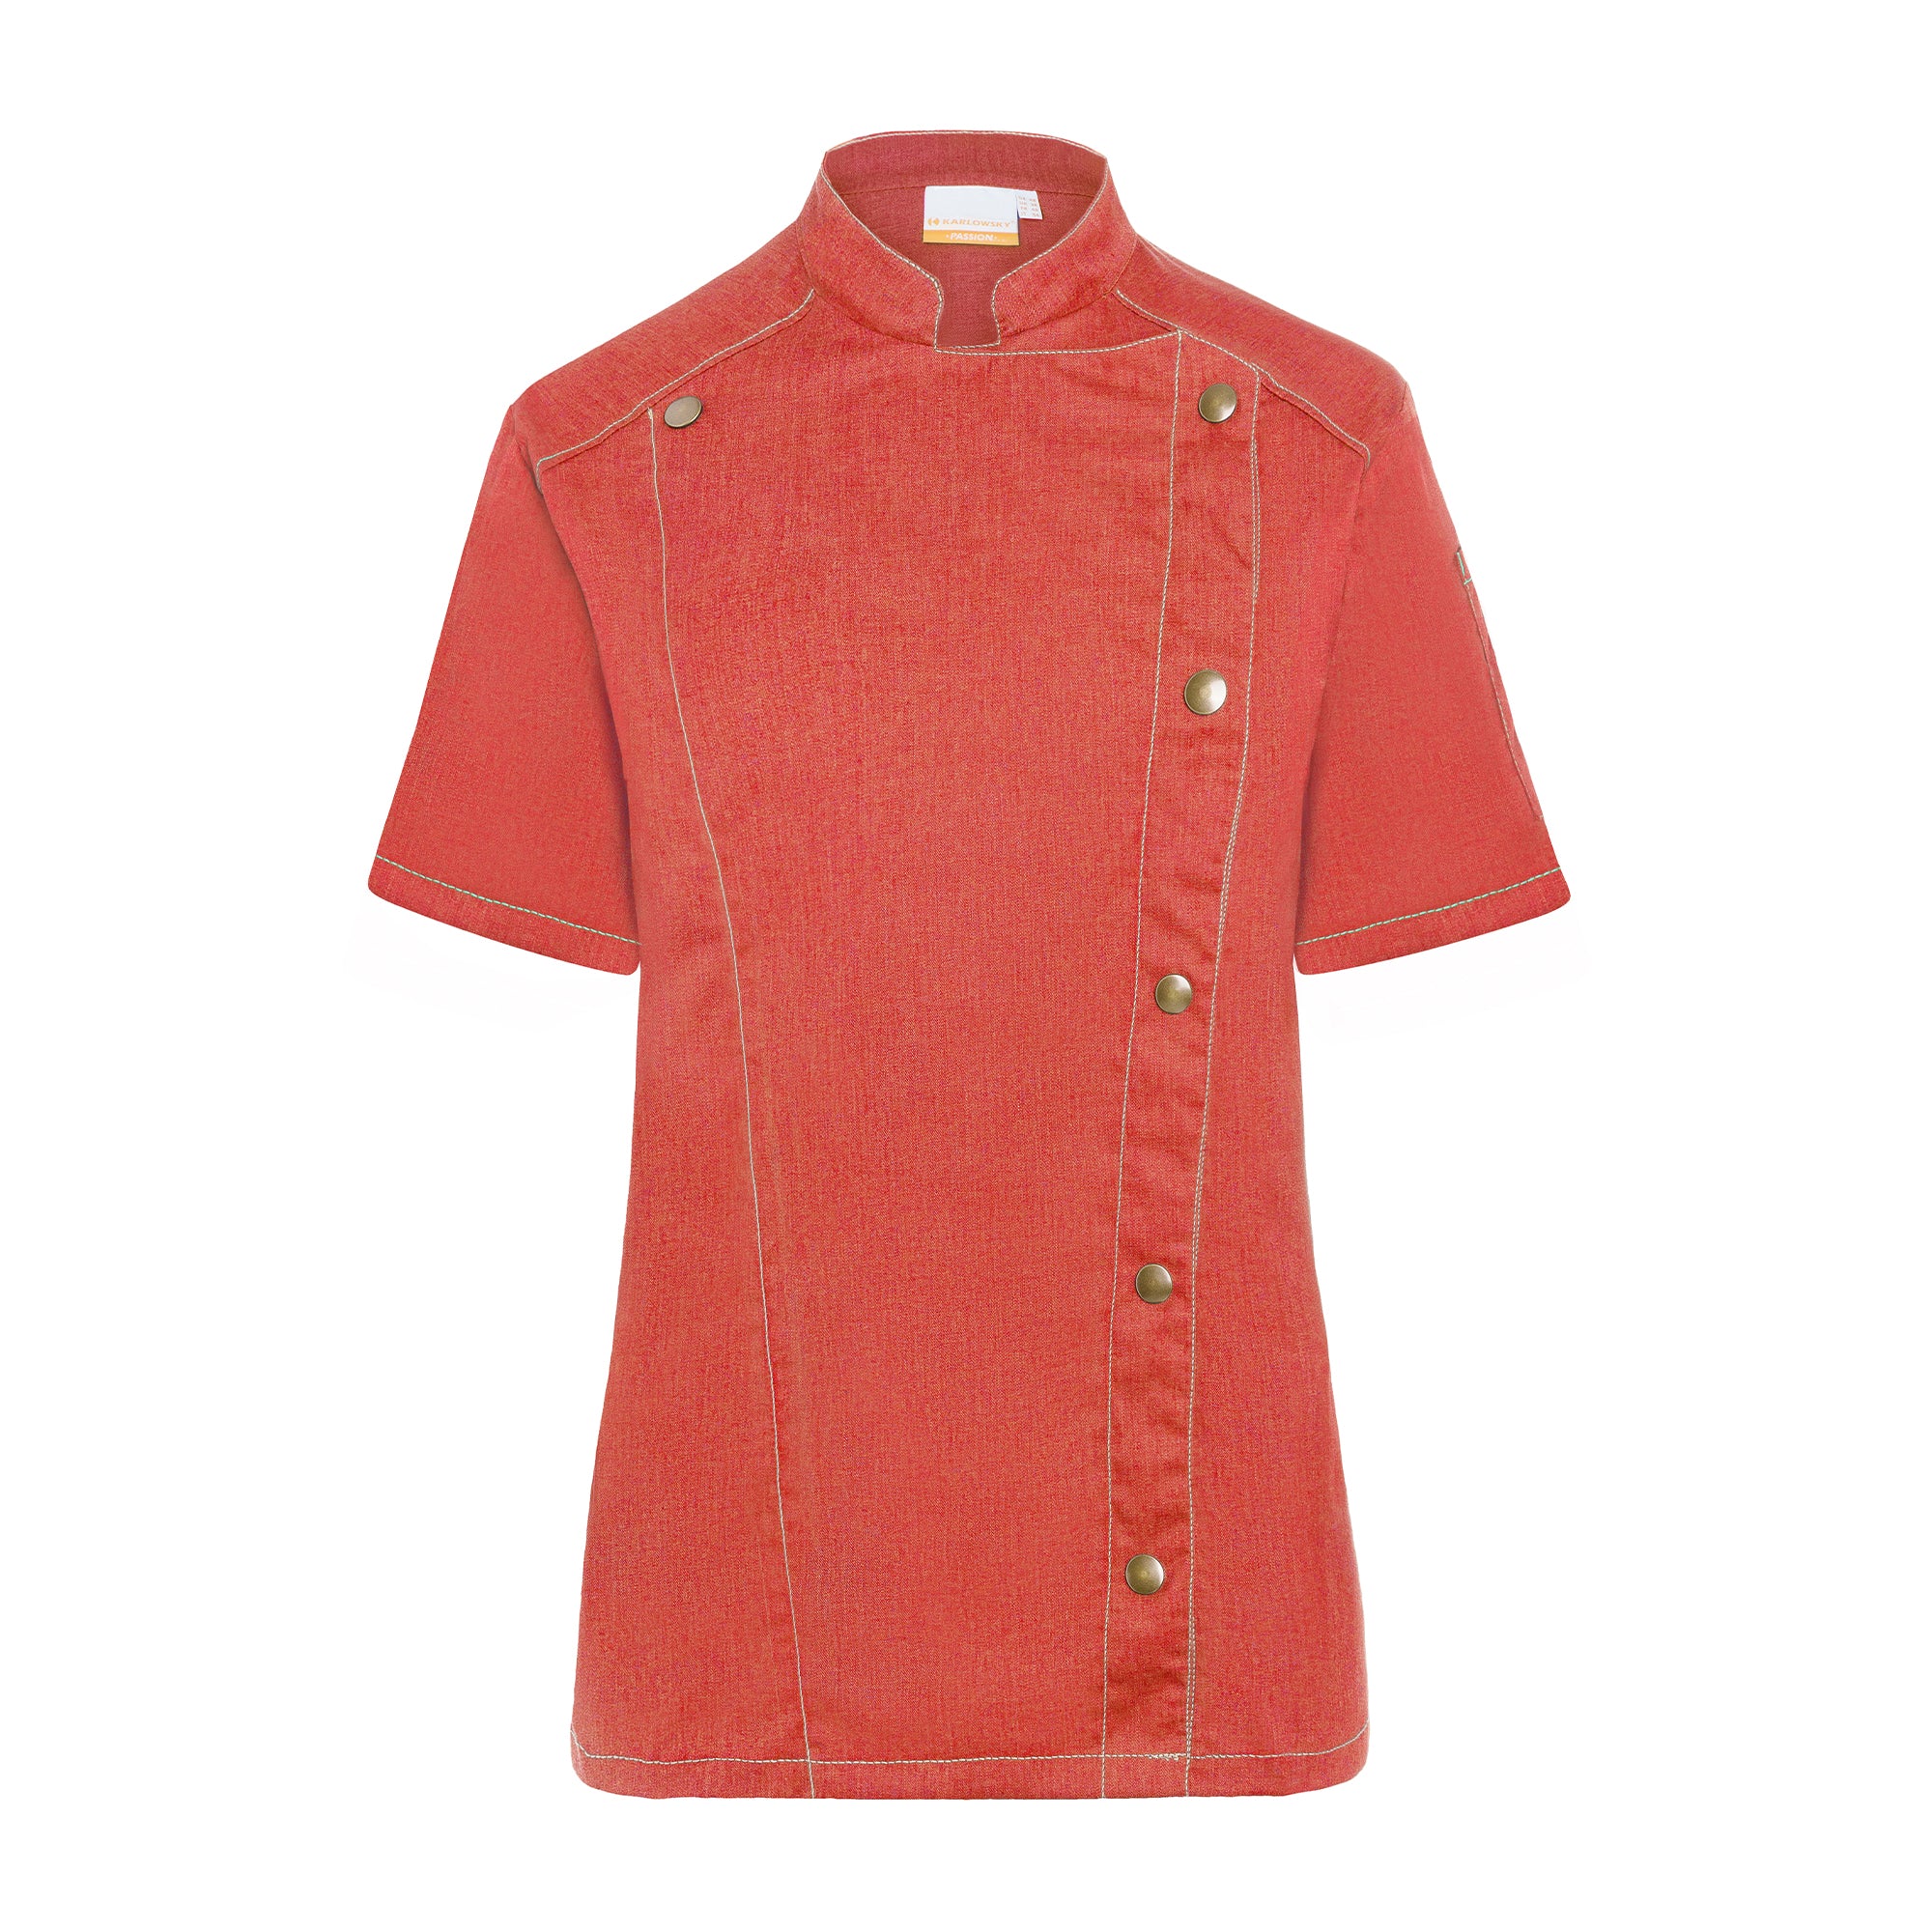 KARLOWSKY | Kortærmet madlavningsjakke til damer i jeansstil - Vintage rød - Størrelse: 36